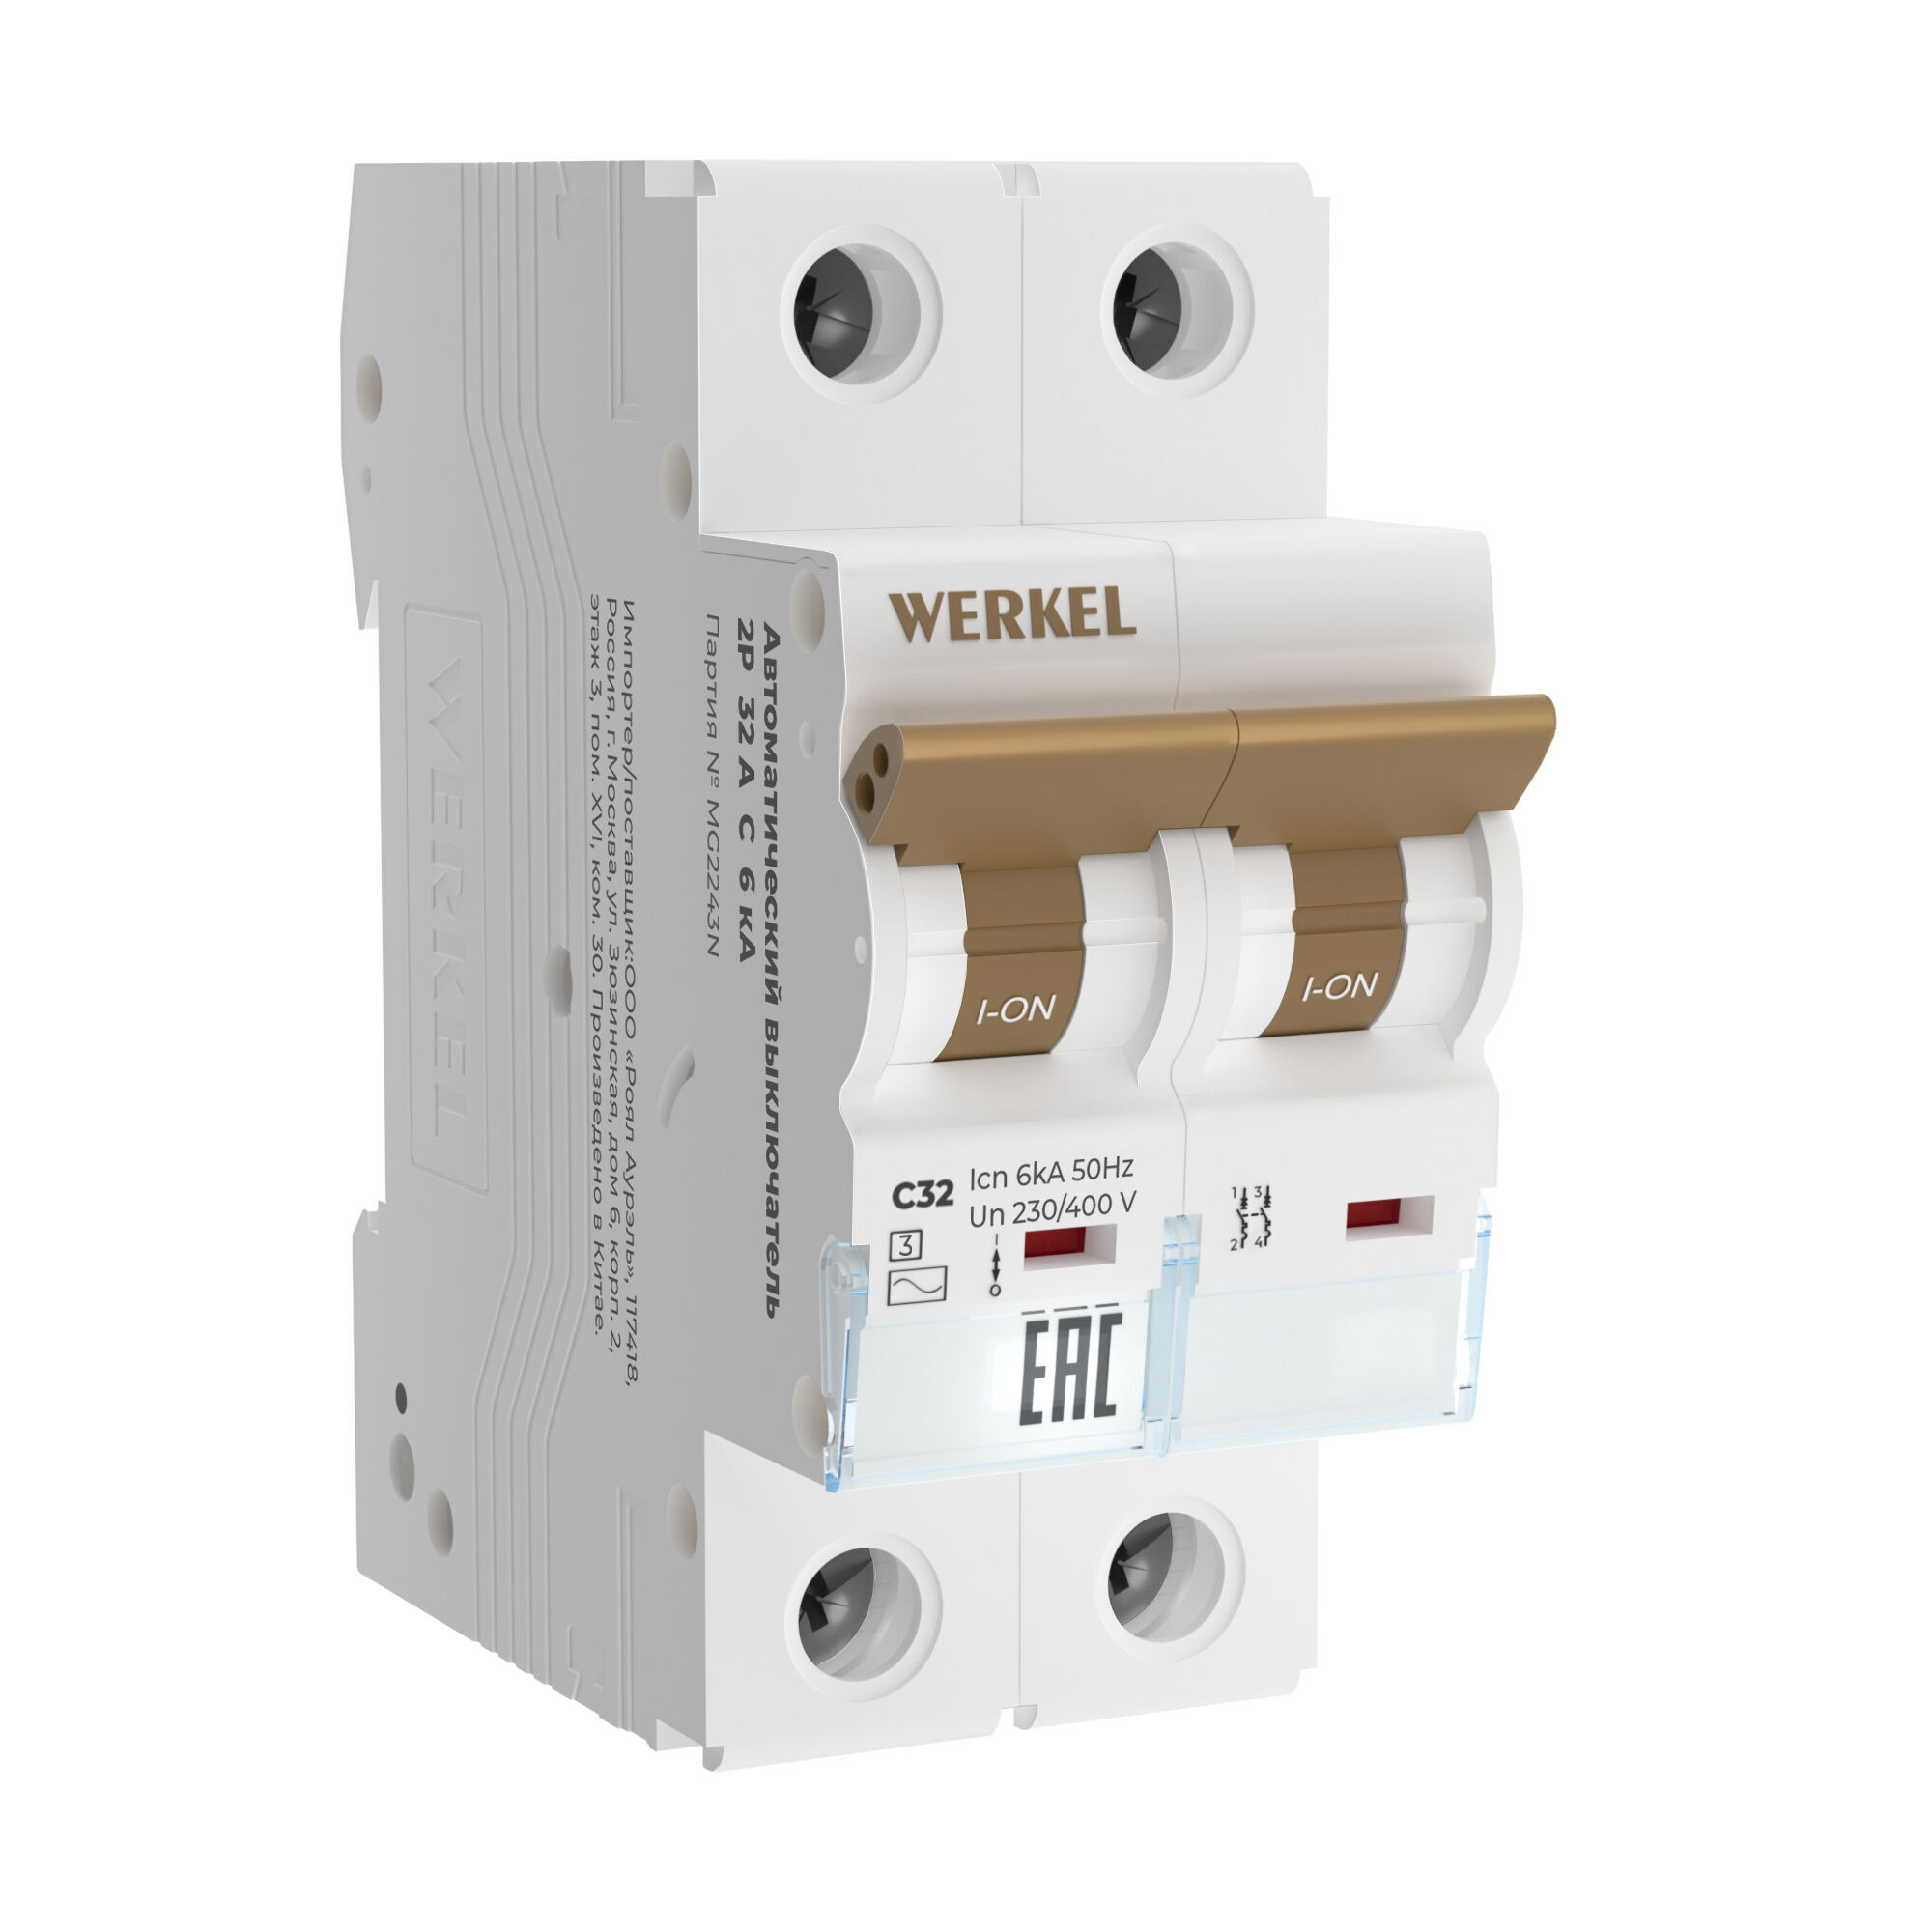 

Автоматический двухполюсный выключатель Werkel W902P326 2P 32 A C 6 кА тип C 50 Гц